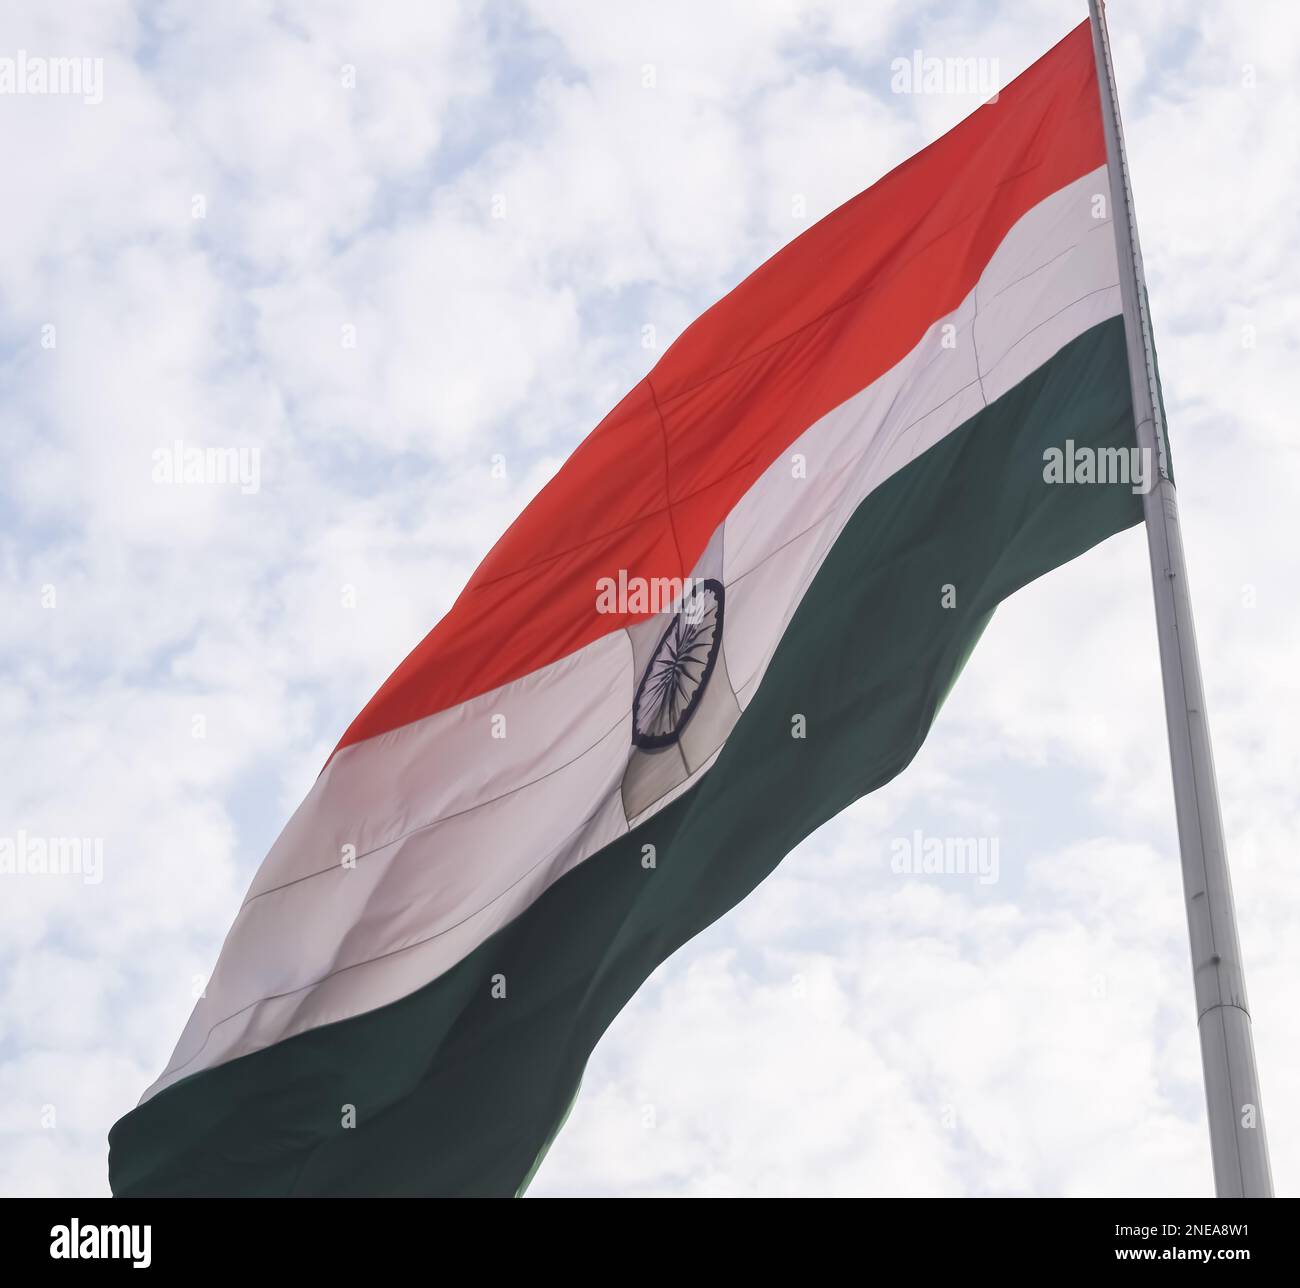 Die indische Flagge fliegt hoch am Connaught Place mit Stolz am blauen Himmel, die indische Flagge flattert, die indische Flagge am Unabhängigkeitstag und am Tag der Republik Indien, ti Stockfoto